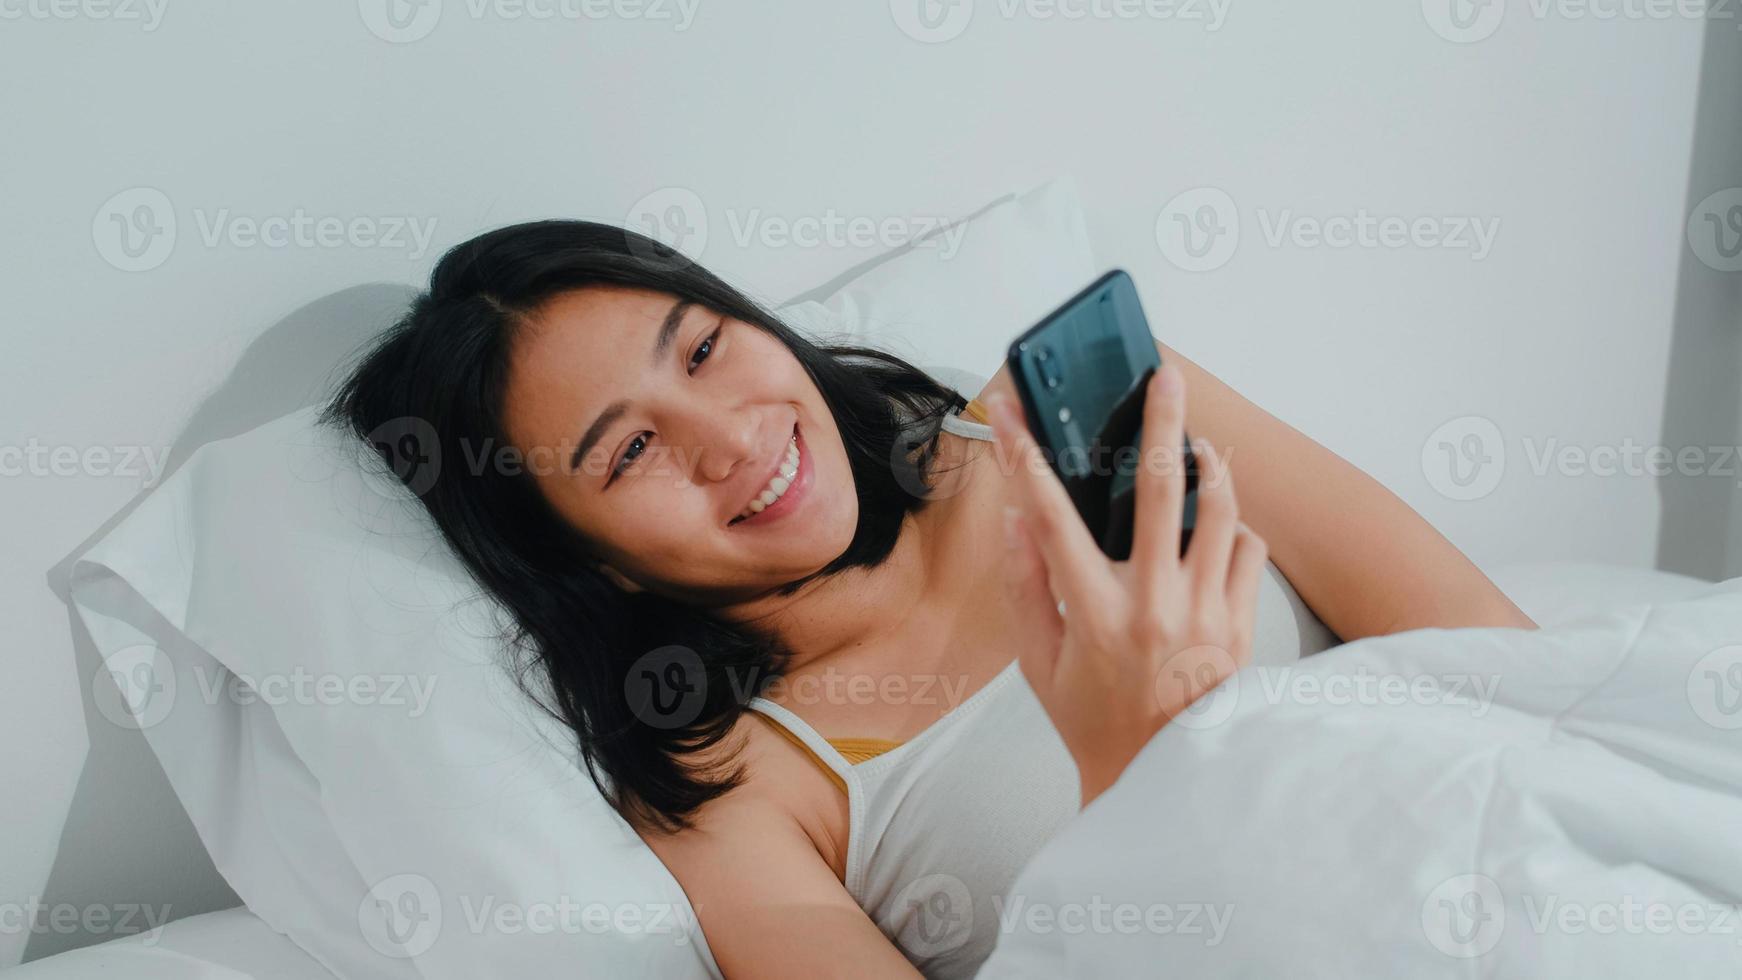 Junge asiatische Frau, die das Smartphone verwendet, um soziale Medien zu überprüfen, fühlt sich glücklich lächelnd, während sie nach dem Aufwachen am Morgen auf dem Bett liegt, schöne attraktive hispanische Dame lächelt entspannt im Schlafzimmer zu Hause. foto